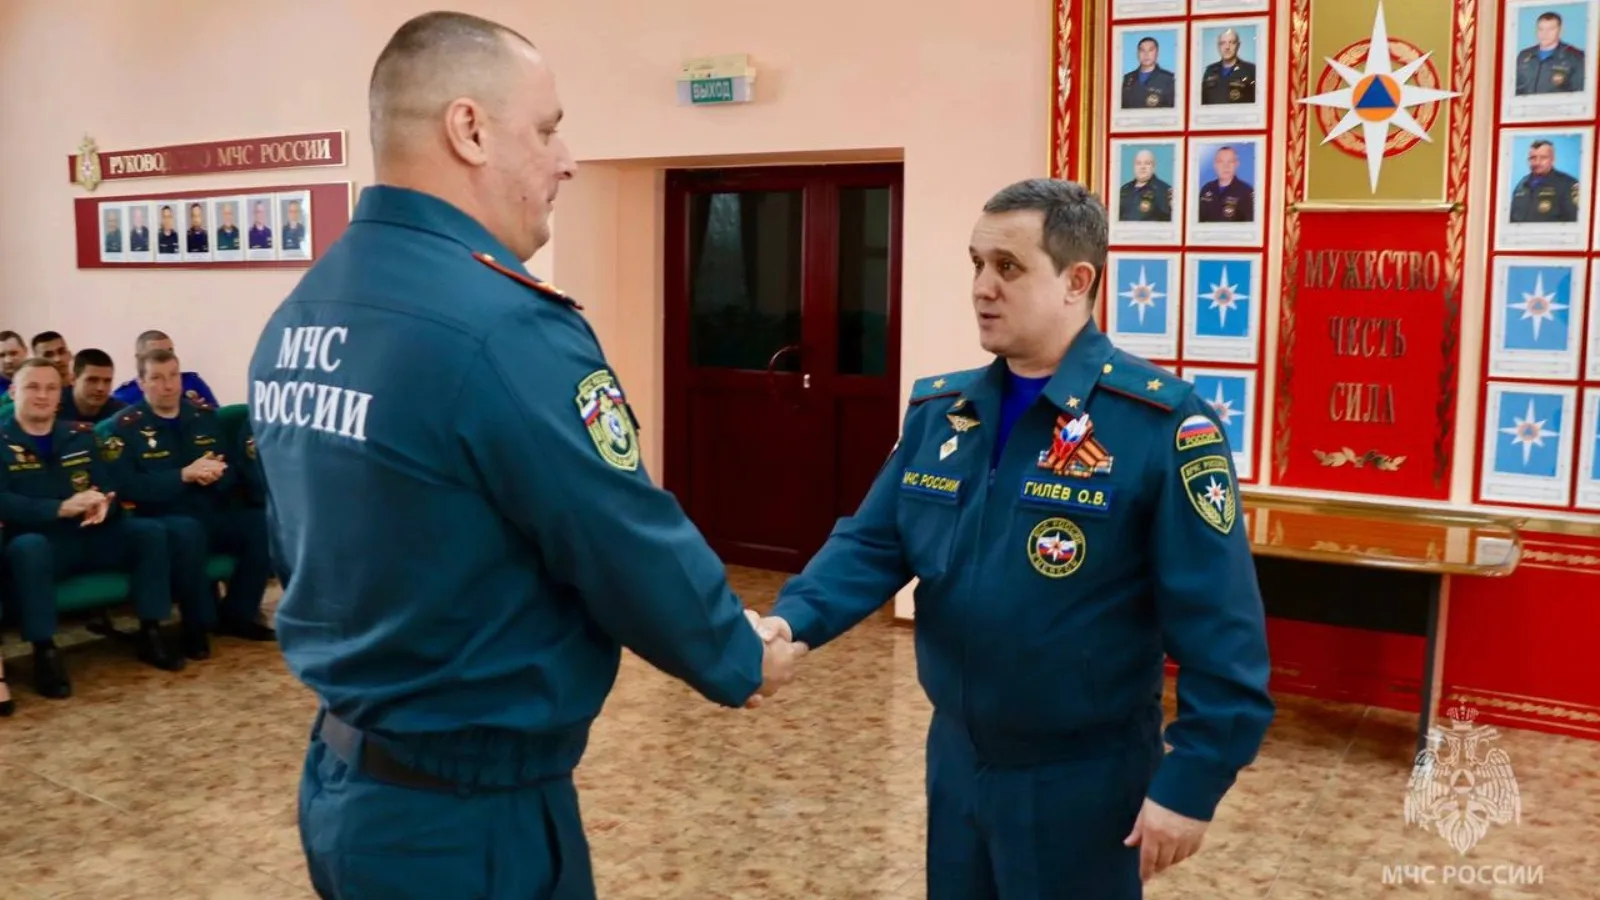 Подполковник Александр Чирков и генерал-майор Олег Гилев. Фото: t.me/gumchsyanao89